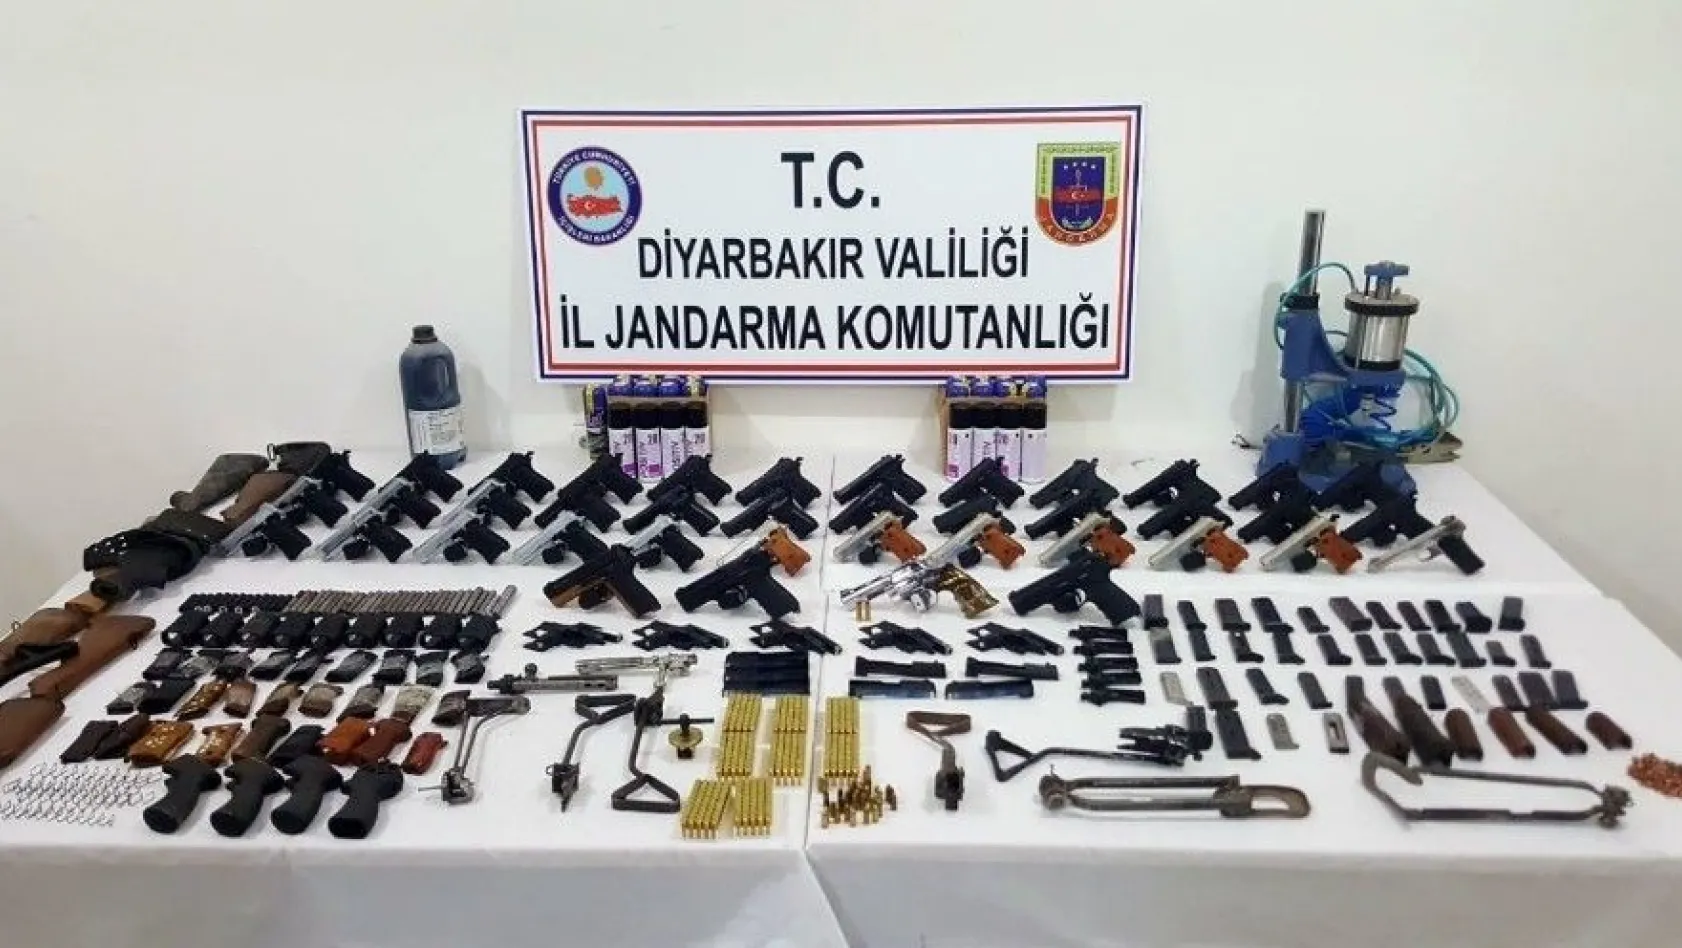 Jandarmadan silah kaçakçılarına darbe: 5 gözaltı
